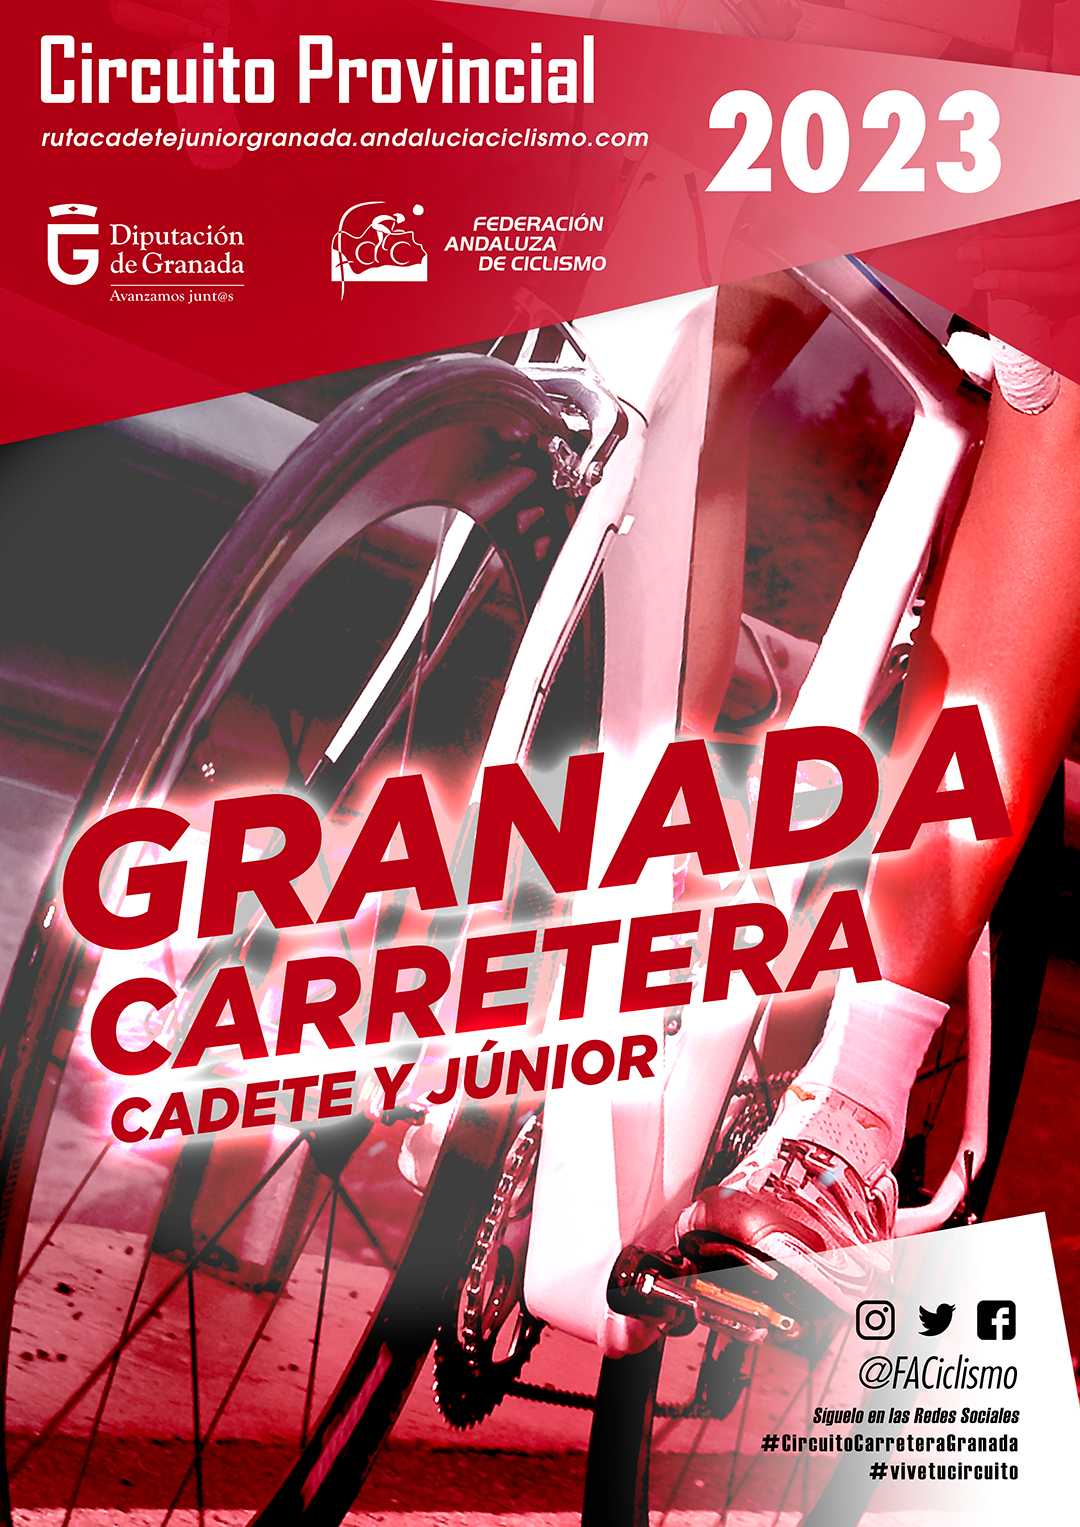 Ganadores finales del Circuito Provincial de Granada Carreta Cadete/Júnior 2023